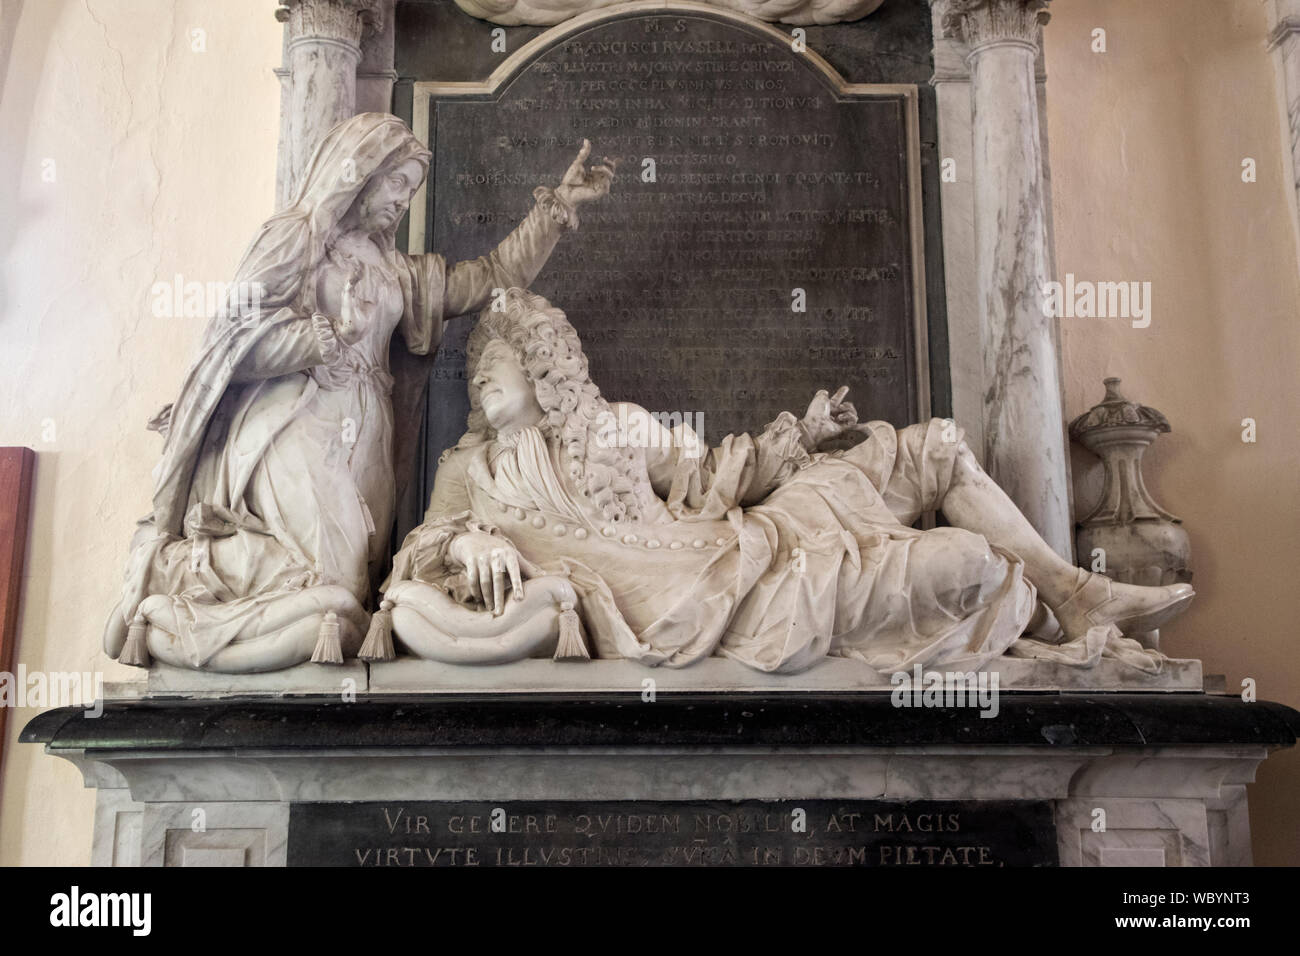 Sir Francis Russell Bart est mort en 1705 et son épouse Anne Dame couvert est mort en 1734, leur monument commémoratif Strensham Worcester Église de St Jean le Baptiste UK HOMER SYKES Banque D'Images